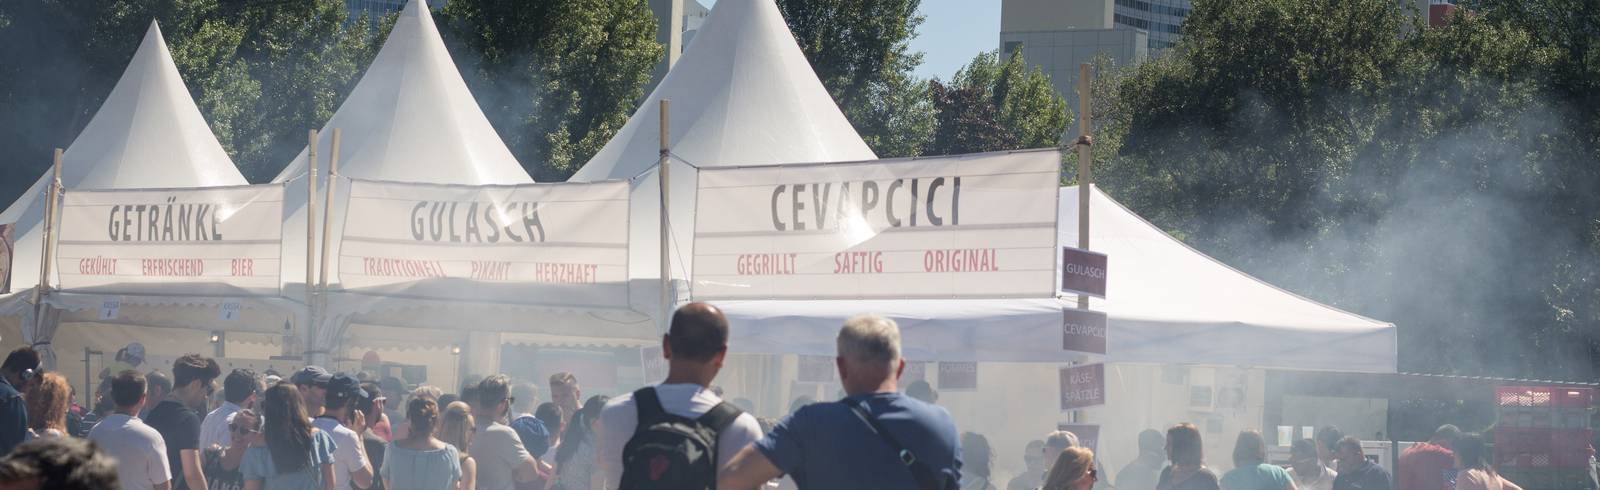 Donauparkfest: "Beim Essen kommen die Leit' zam"